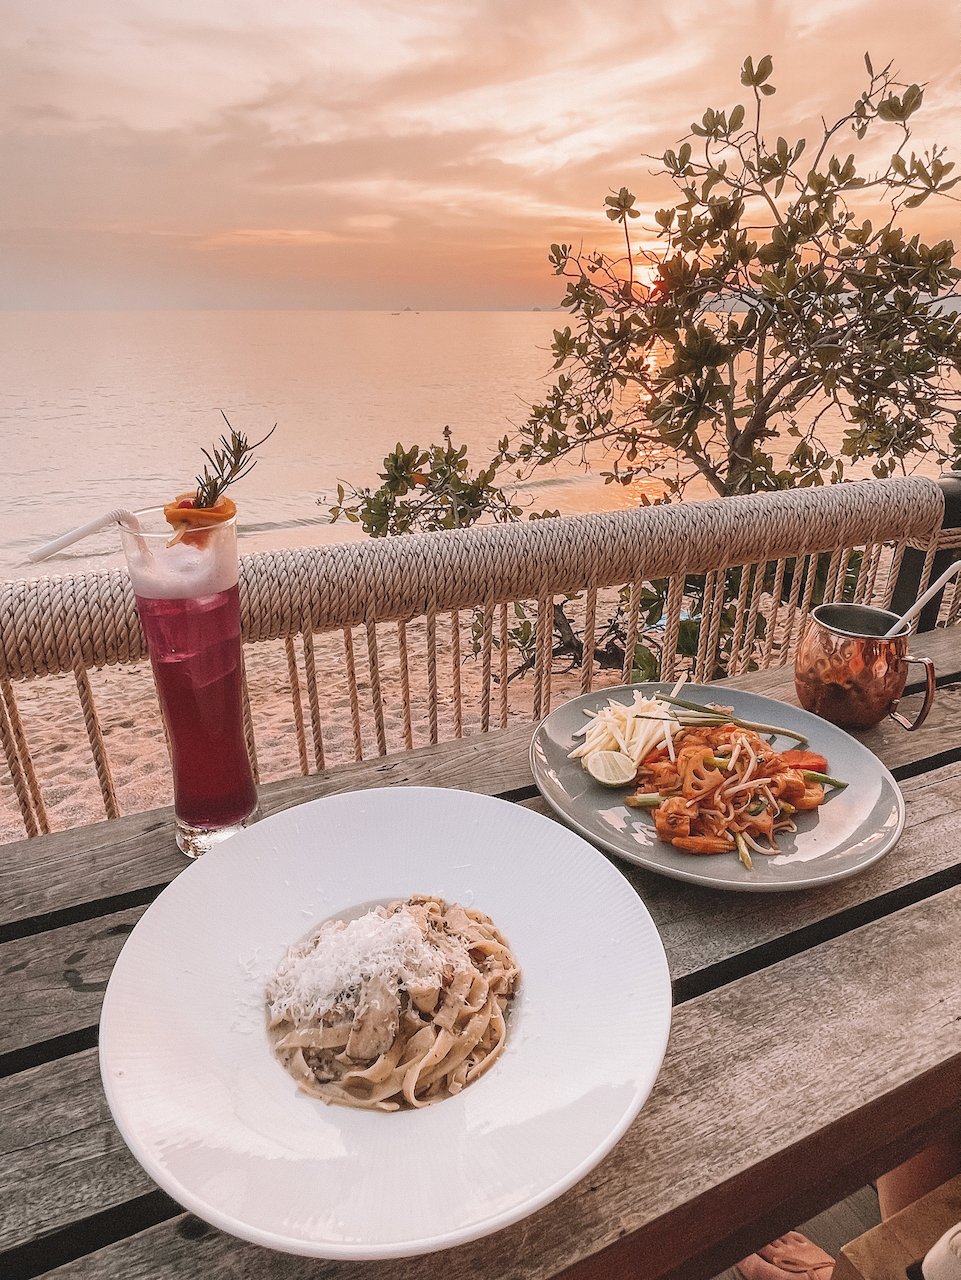 Pâtes et cocktails au coucher de soleil - Reeve Beach Club - Ao Nang - Krabi - Thaïlande